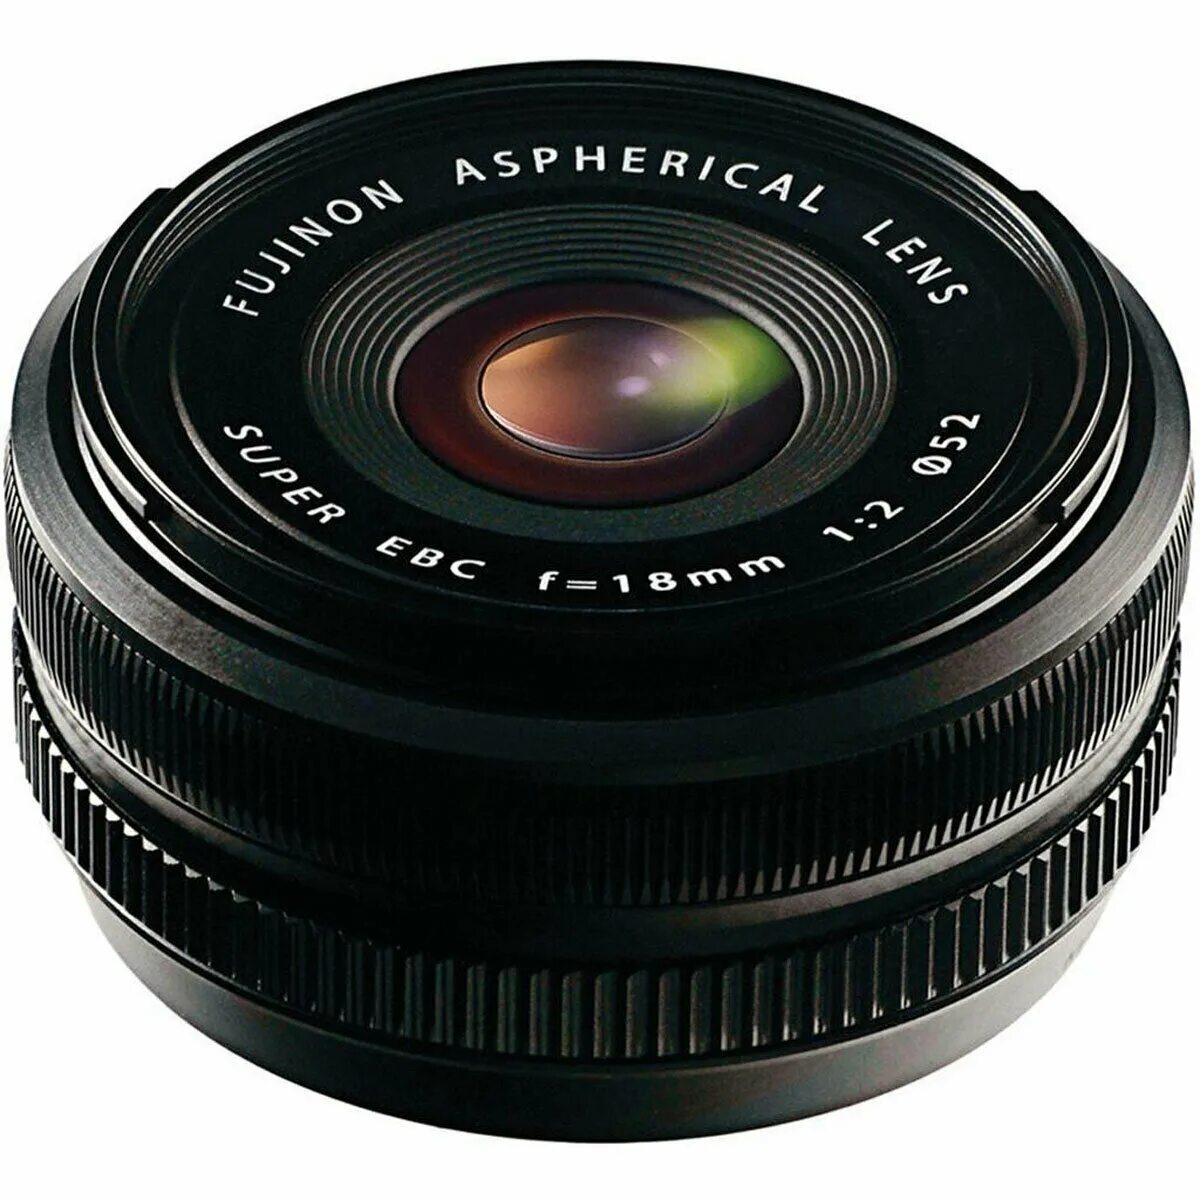 Купить камеру объектив. Fujifilm XF 18mm f/2. Fujifilm 18mm f2. Объектив Fujifilm XF 18mm f/2 r x-Mount. Fujinon 18mm f2.